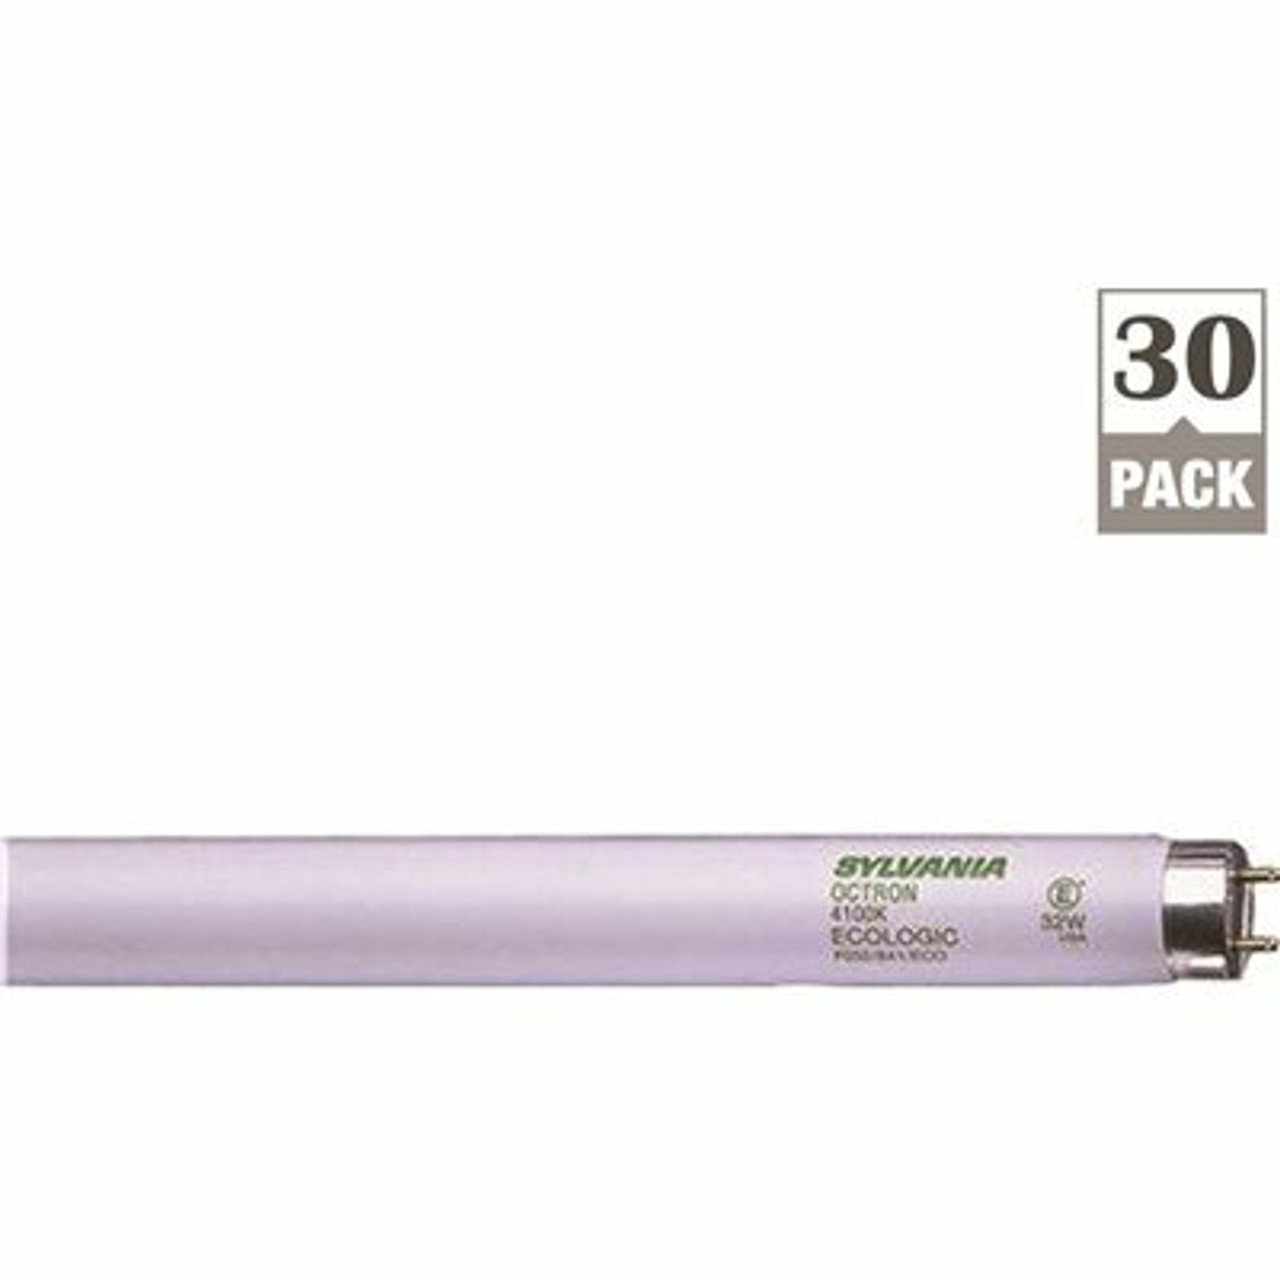 Sylvania 32- -Watt 4 Ft. Linear T8 Fluorescent Tube Light Bulb Daylight (30-Pack)